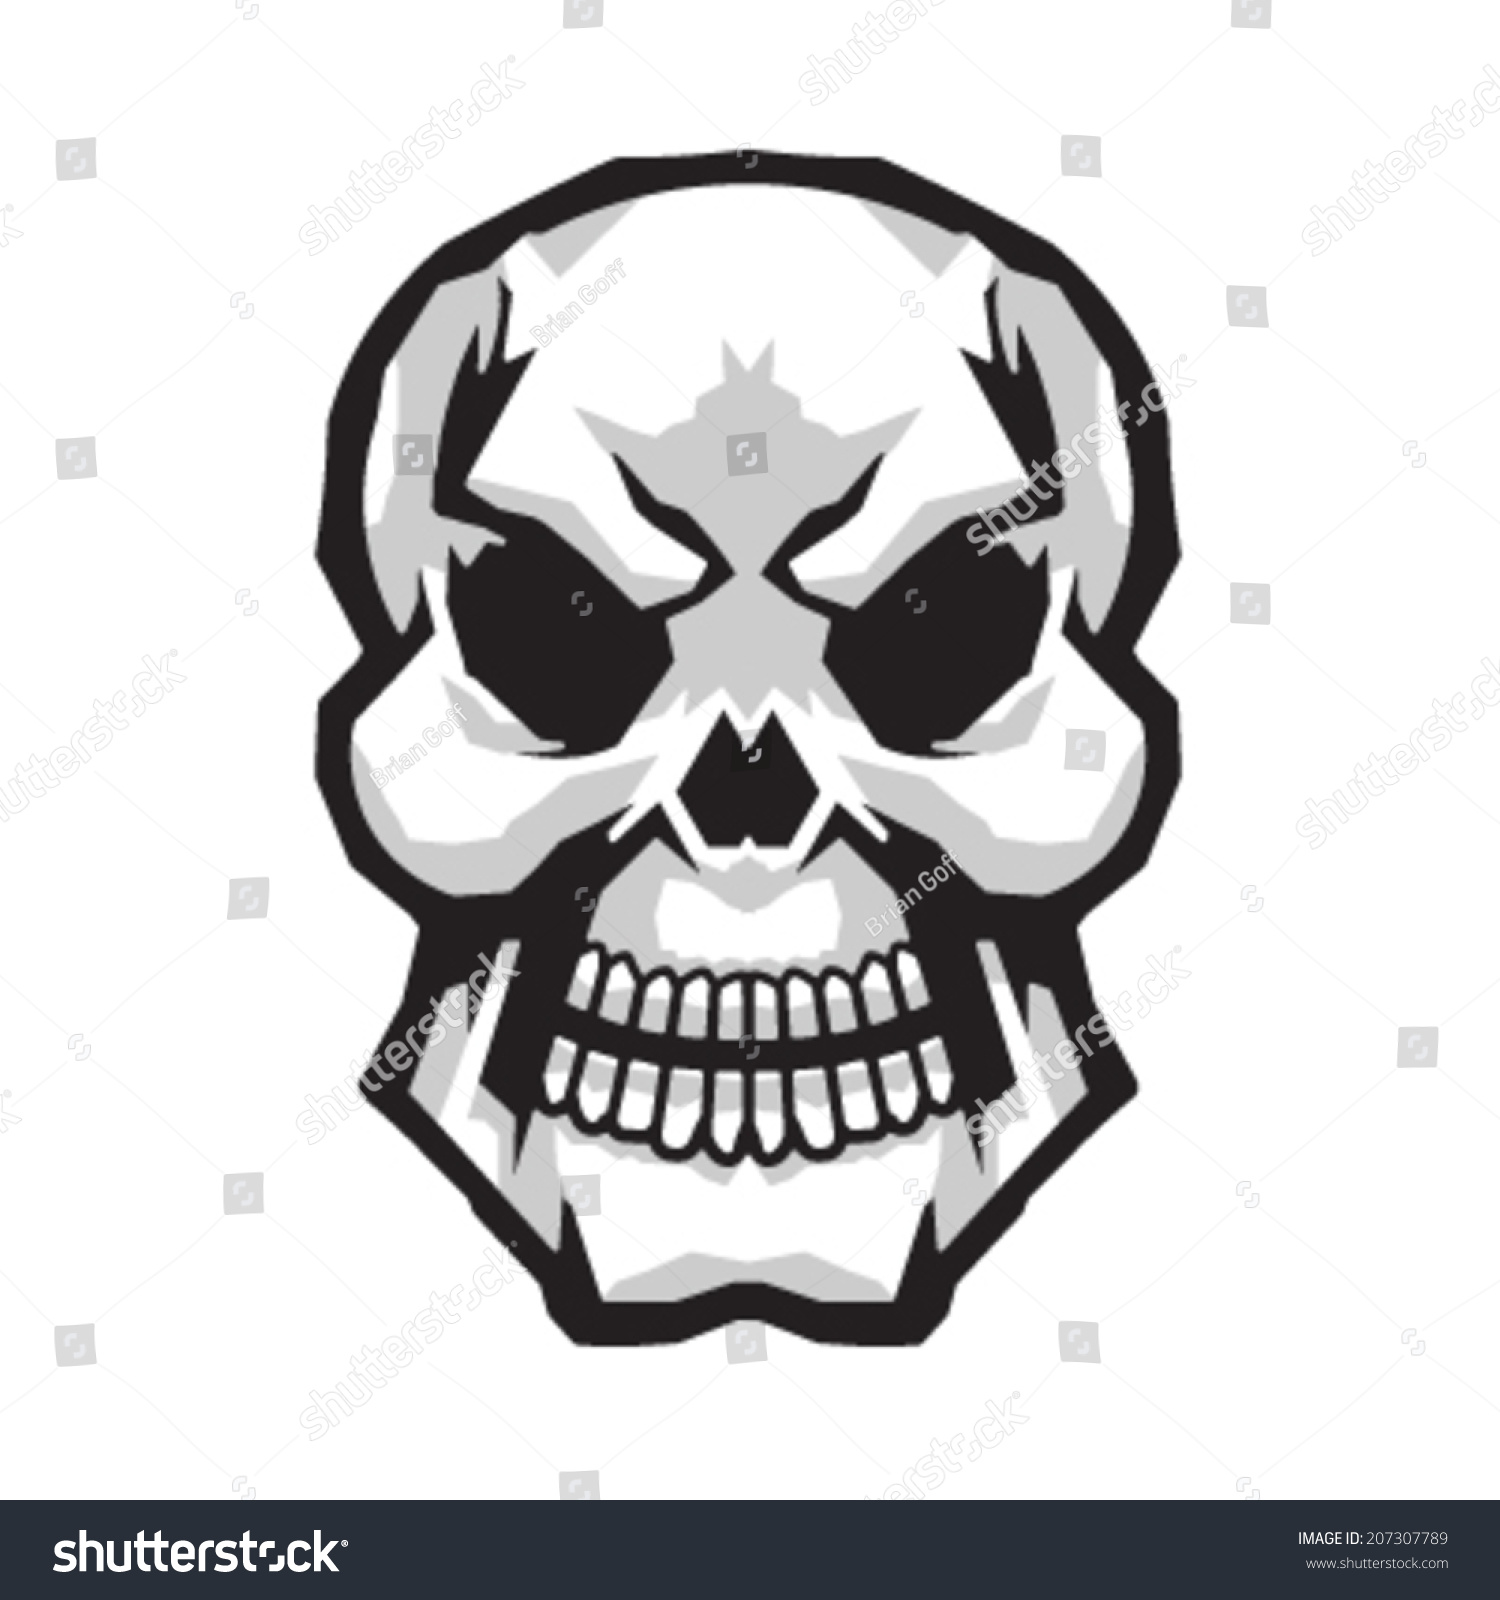 Edit Vectors Free Online - Skull vector | Shutterstock Editor